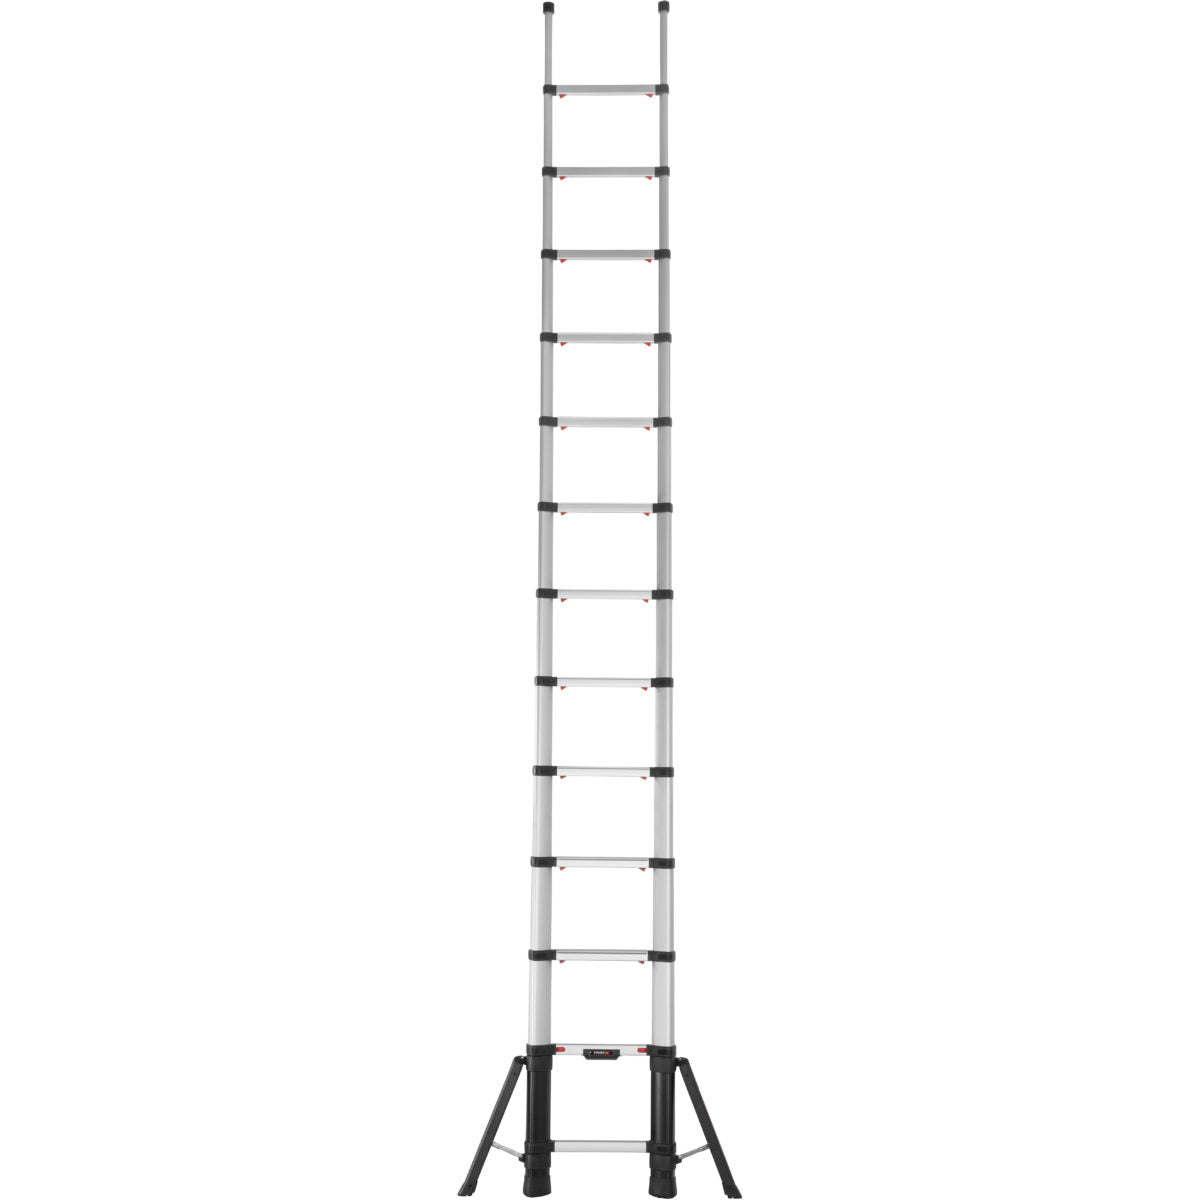 Telesteps Prime Telescopic Ladder With Stabiliser Legs - 4.1 m